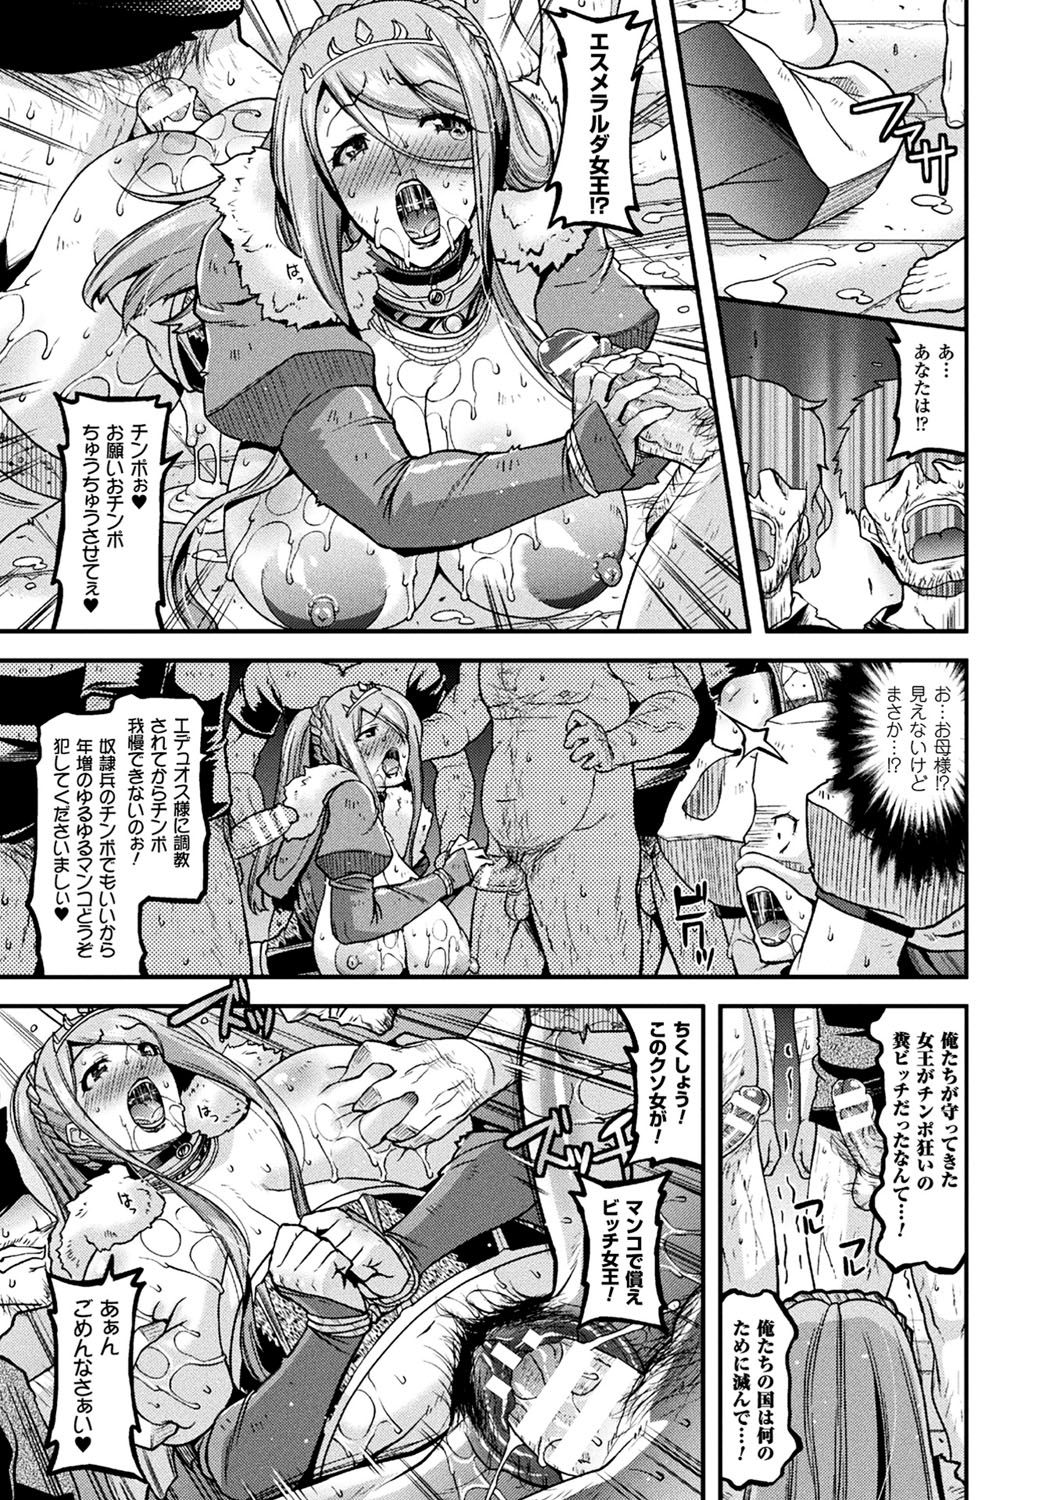 2Dコミックマガジン袋をかぶせられた菅田でなられるヒロイン太刀V​​ol。 1